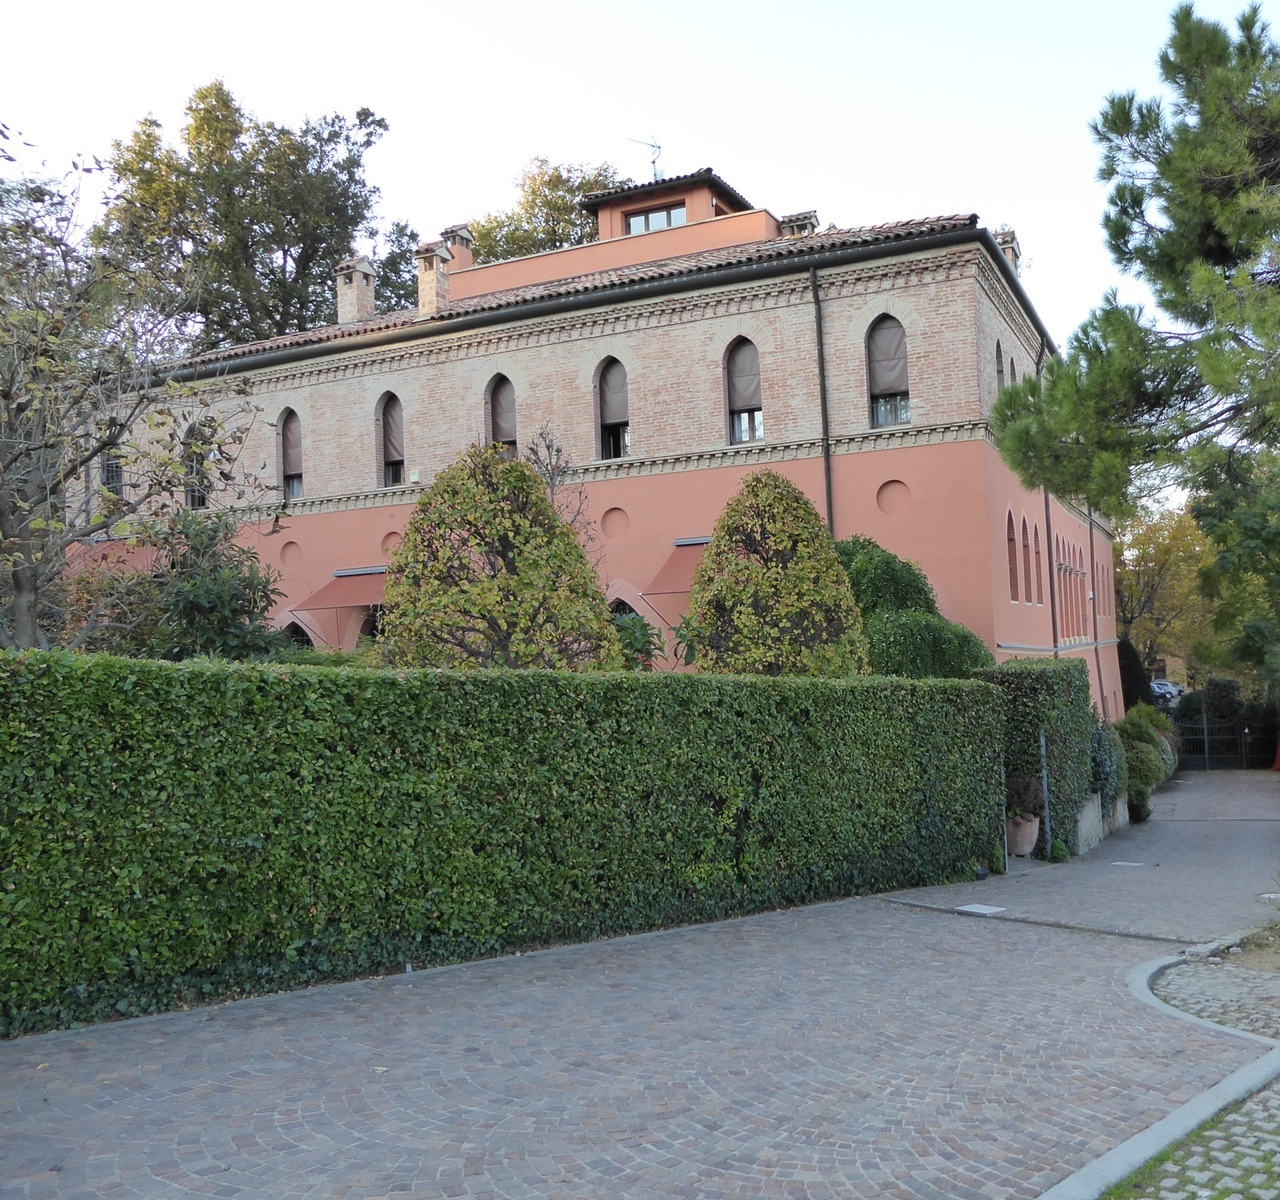 Colli,Via Santa Liberata,Bologna Sud,4 Rooms Rooms,Residenziale,1327